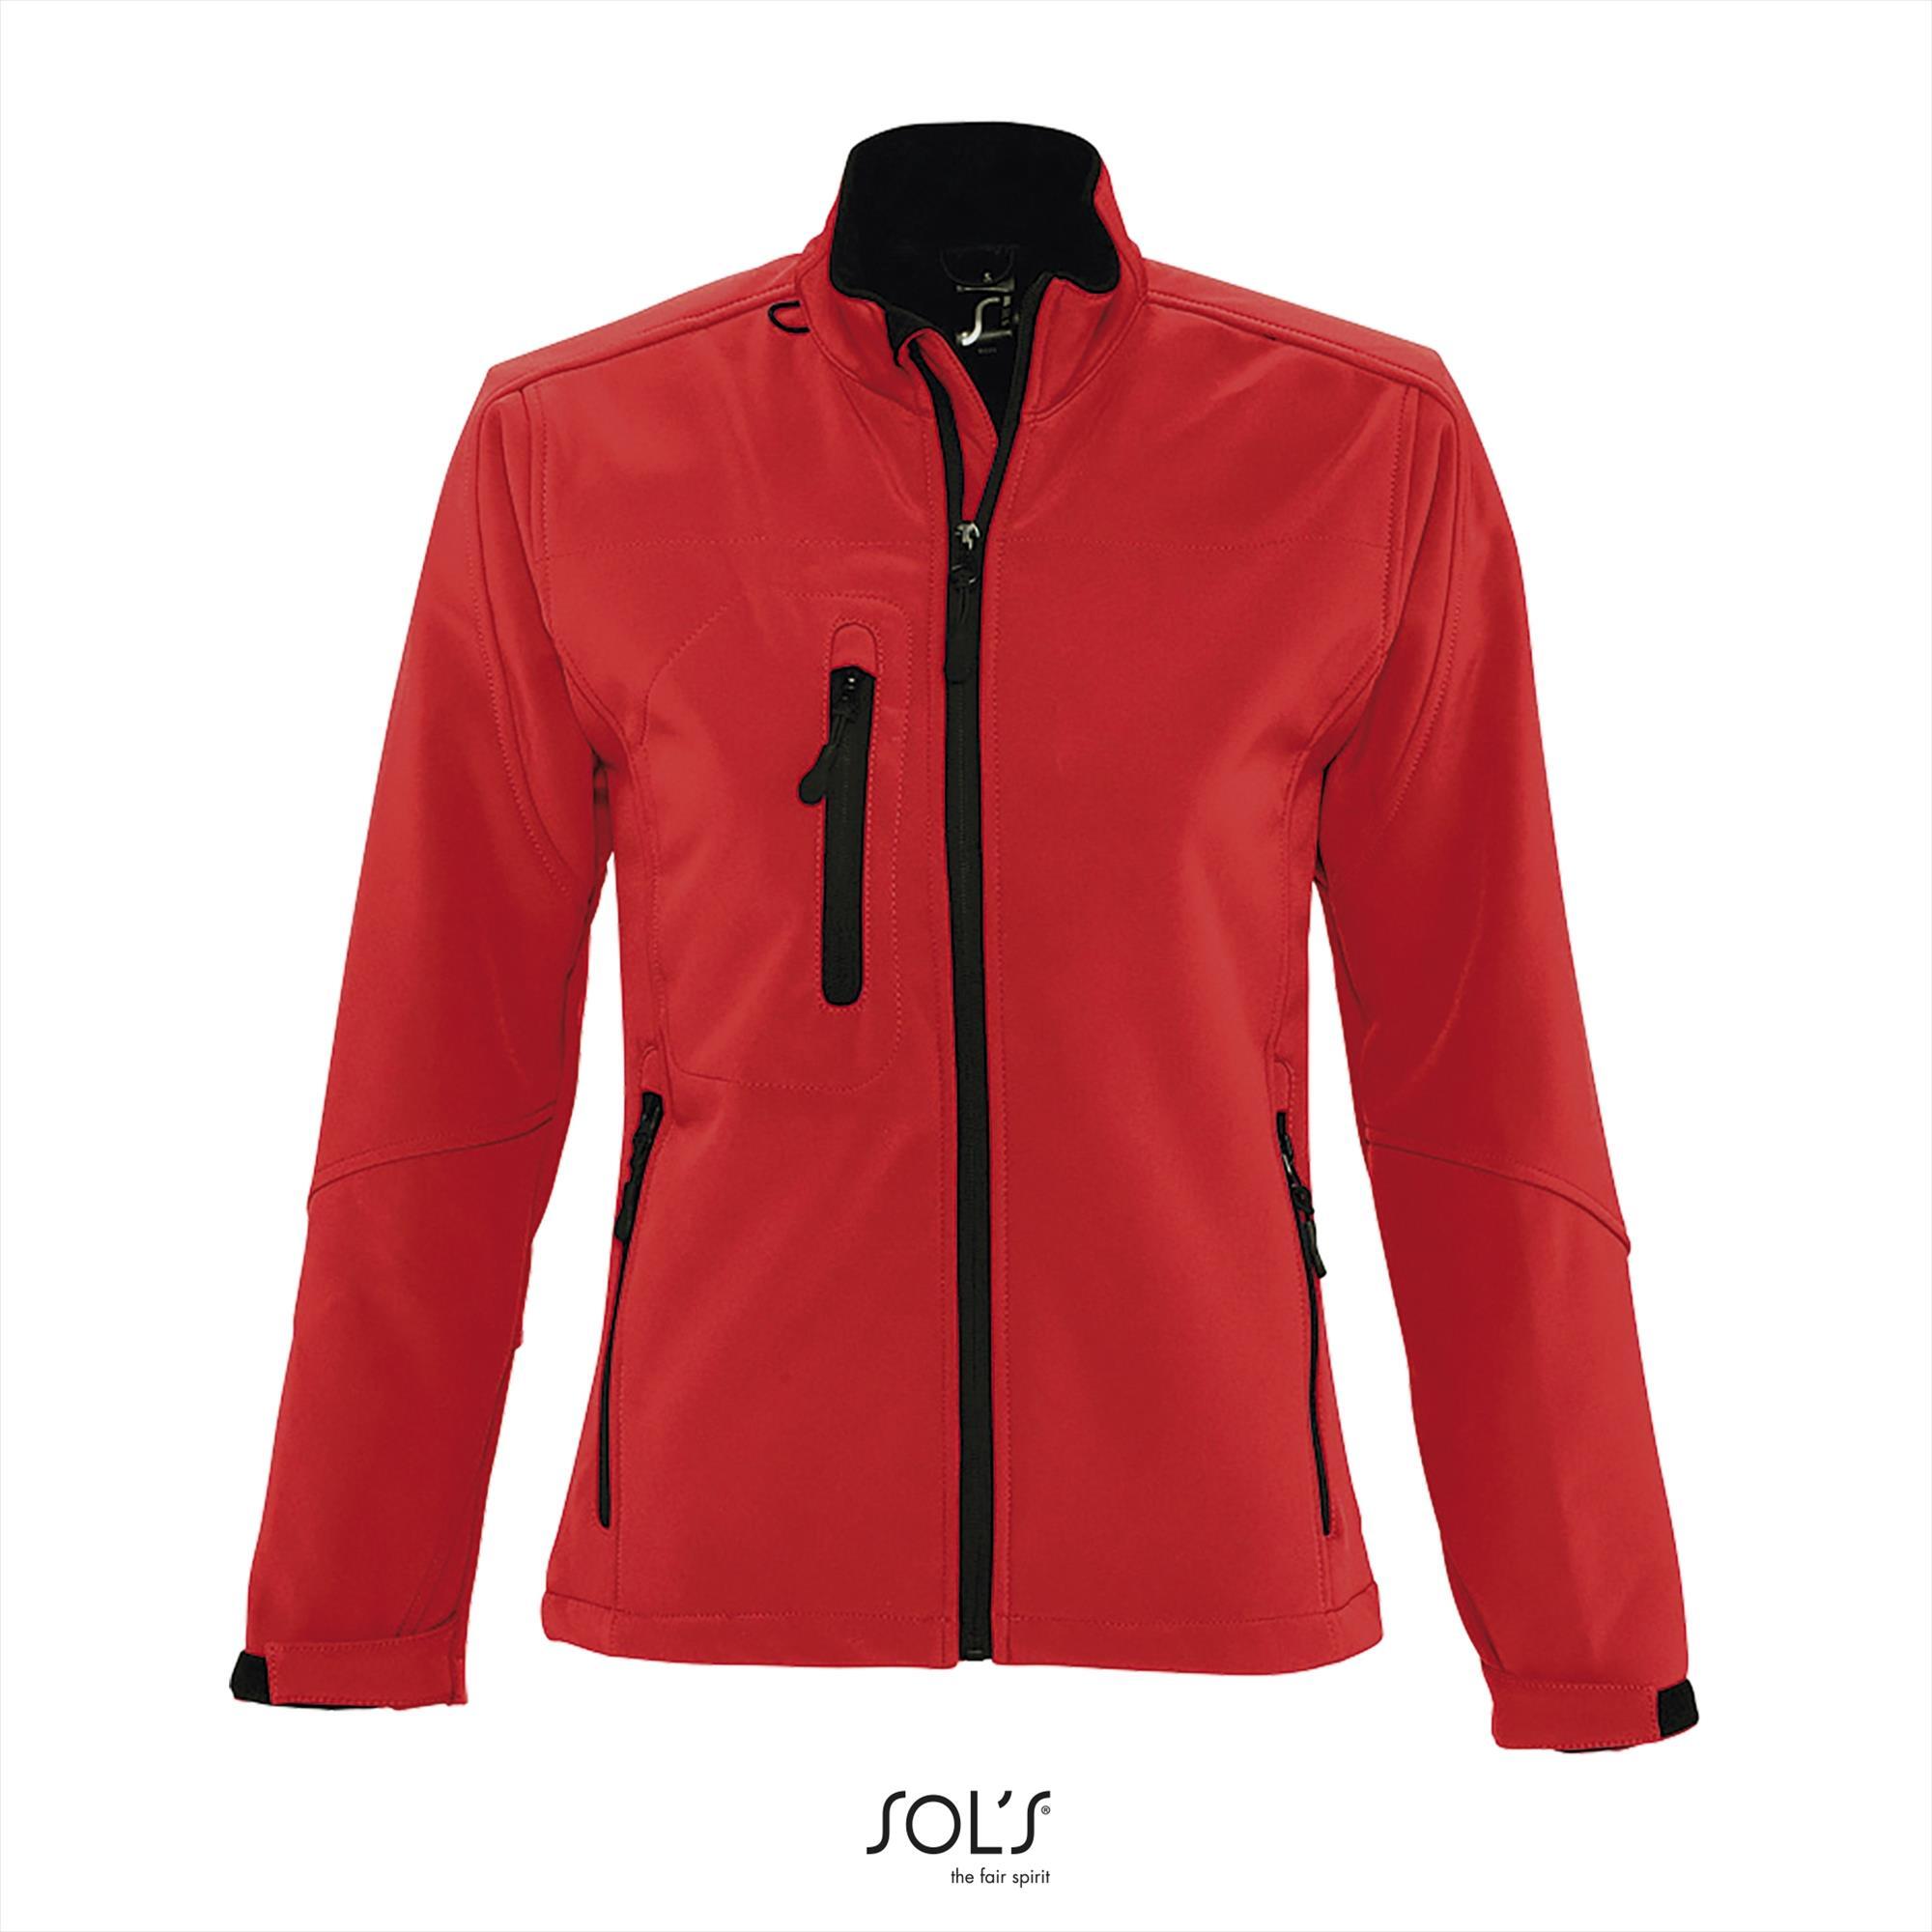 Sportieve dames softshell jacket peper rood met een borstzakje.